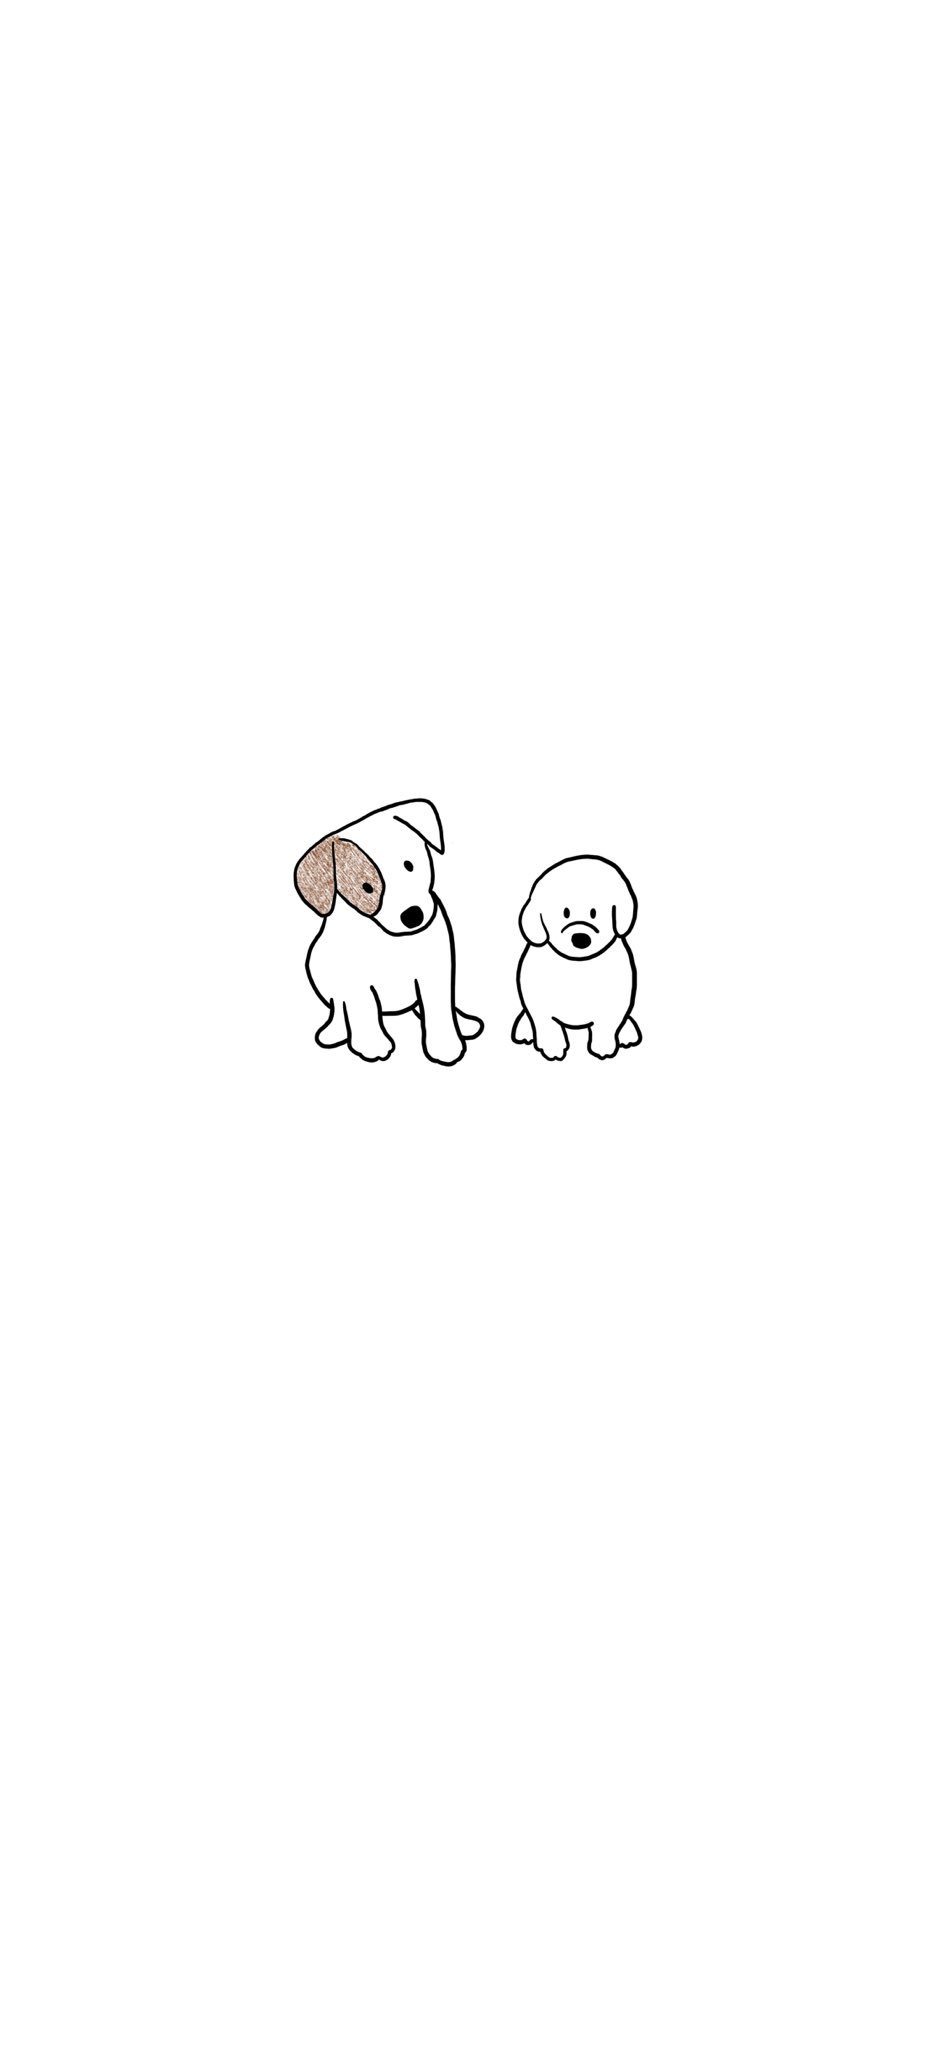 お菓子パーラー イラスト Iphone スマホ 壁紙 犬 いぬ Dog 画像 わんちゃん ホーム画面 色鉛筆 T Co Vh33s8zr Twitter